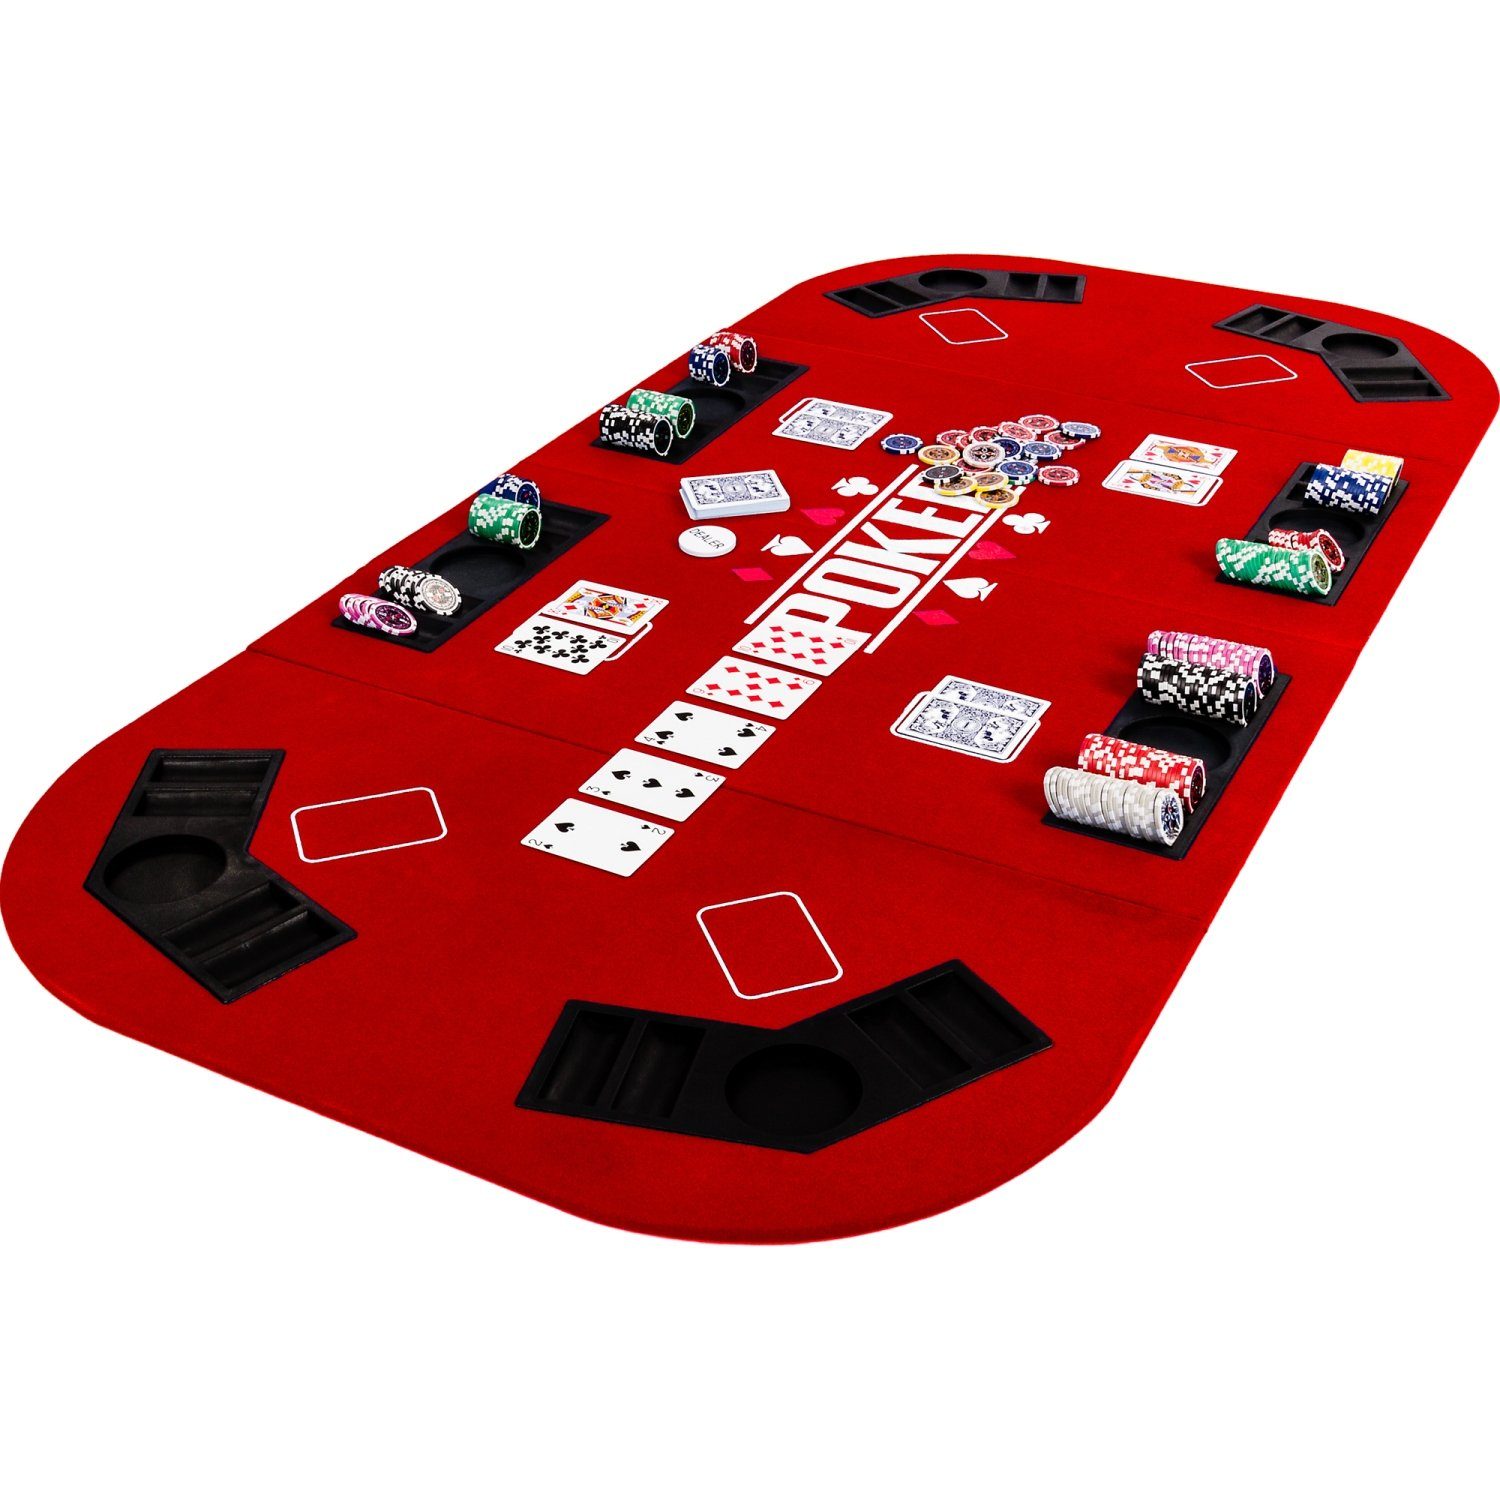 GAMES PLANET Spiel, Games Planet Faltbare Pokerauflage „Straight“, 2-8 Spieler, Maße 160x80 cm, MDF Platte, 8 Getränkehalter, 8 Chiptrays Rot